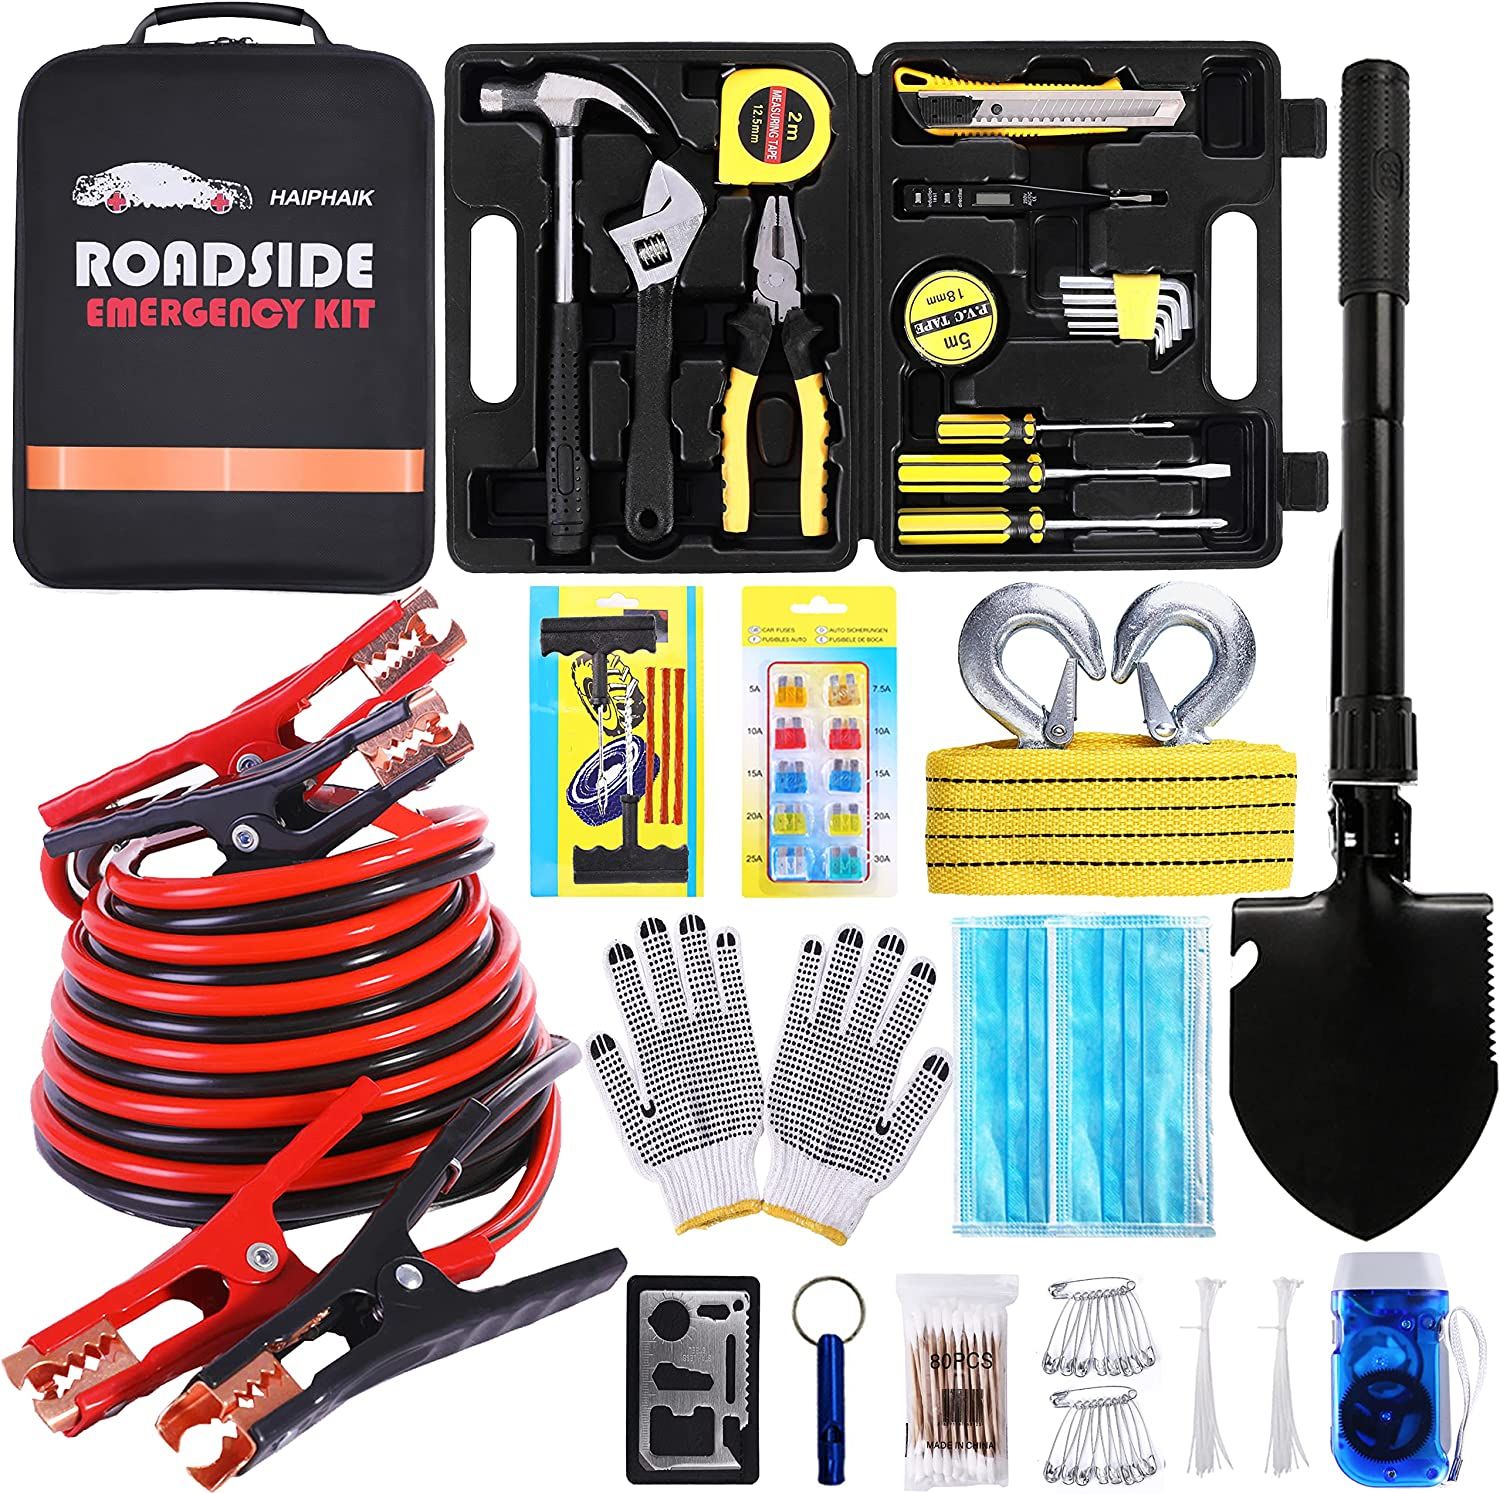 Amazon.com: HAIPHAIK Car Emergency Roadside Kit - Auto Vehicle Safety Road Side Assistance Kits J... | Amazon (US)